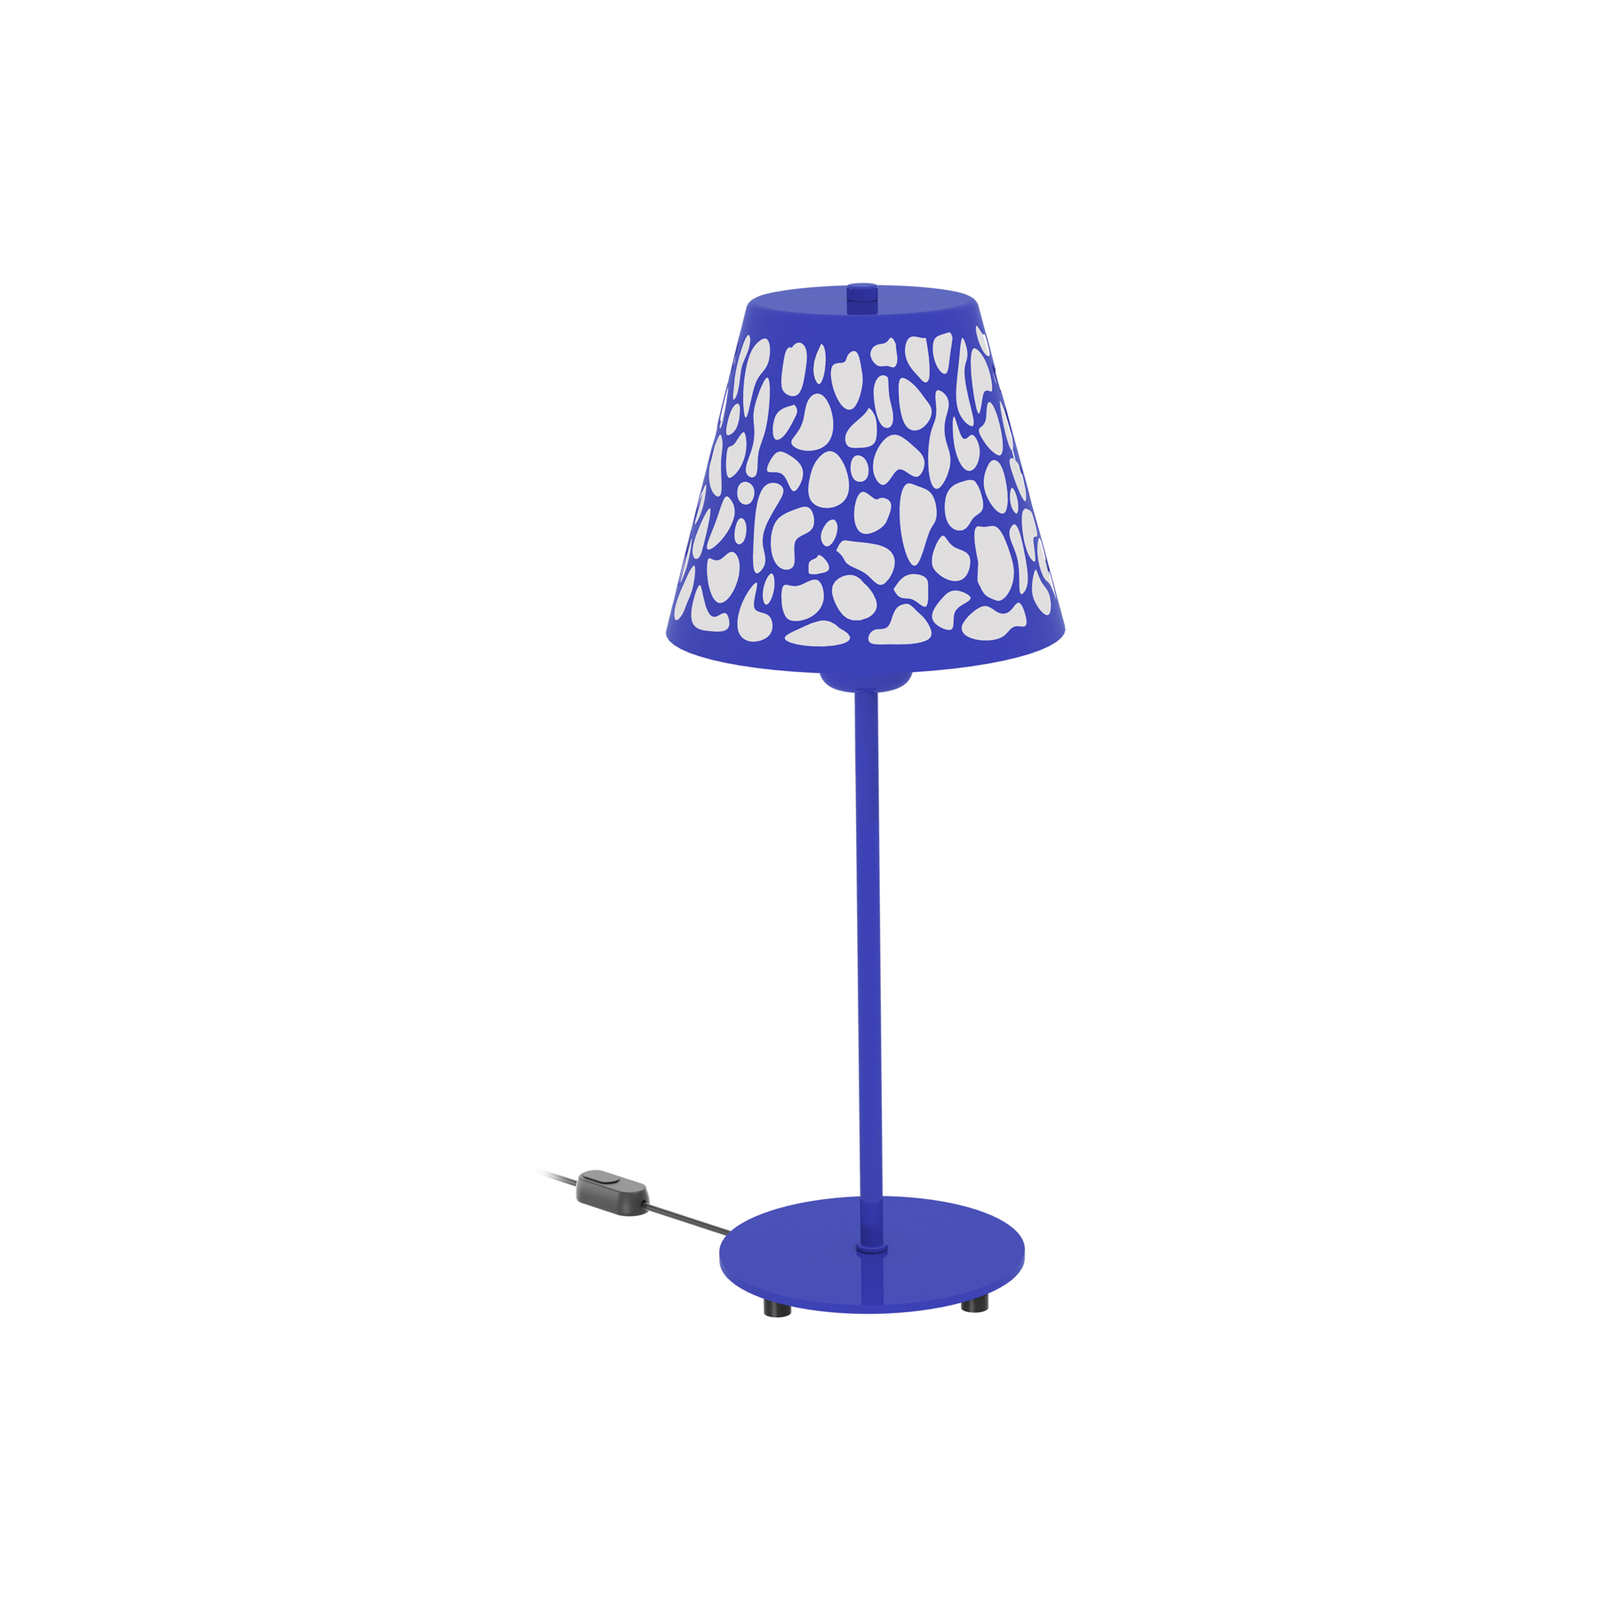 Aluminor Nihoa bordslampa med hålmönster blå/vit